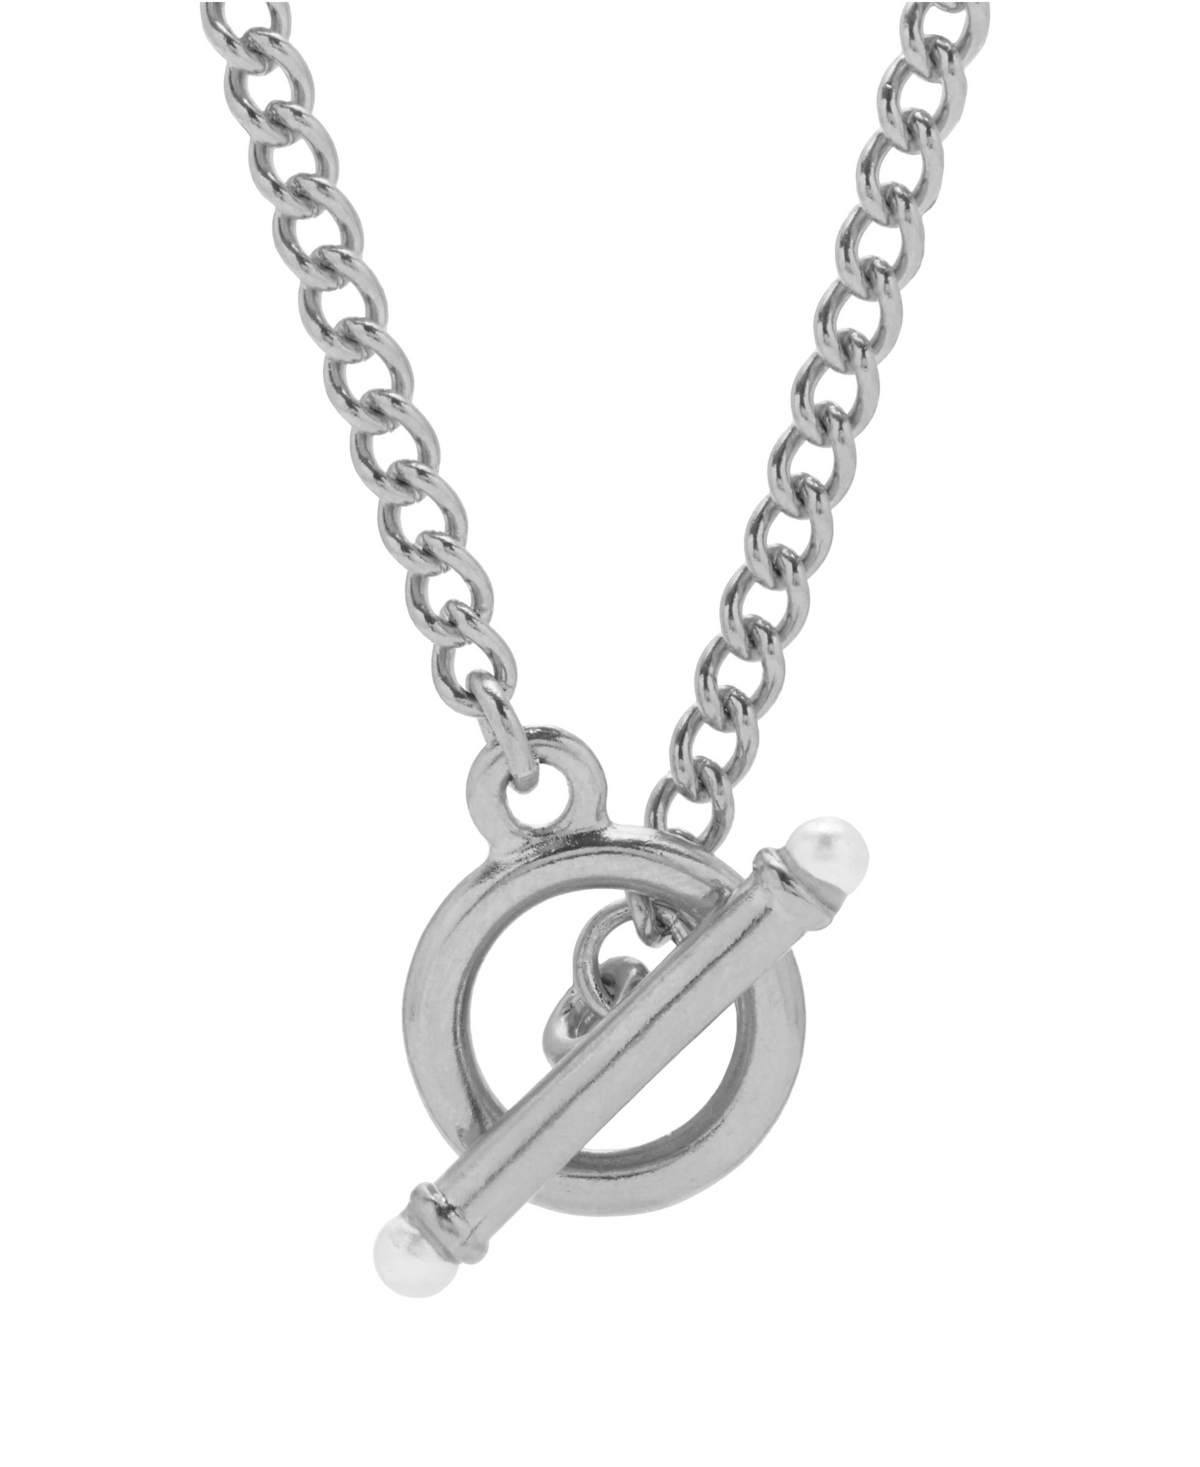 Stella Pearl Toggle Chain Necklace - Rhodium